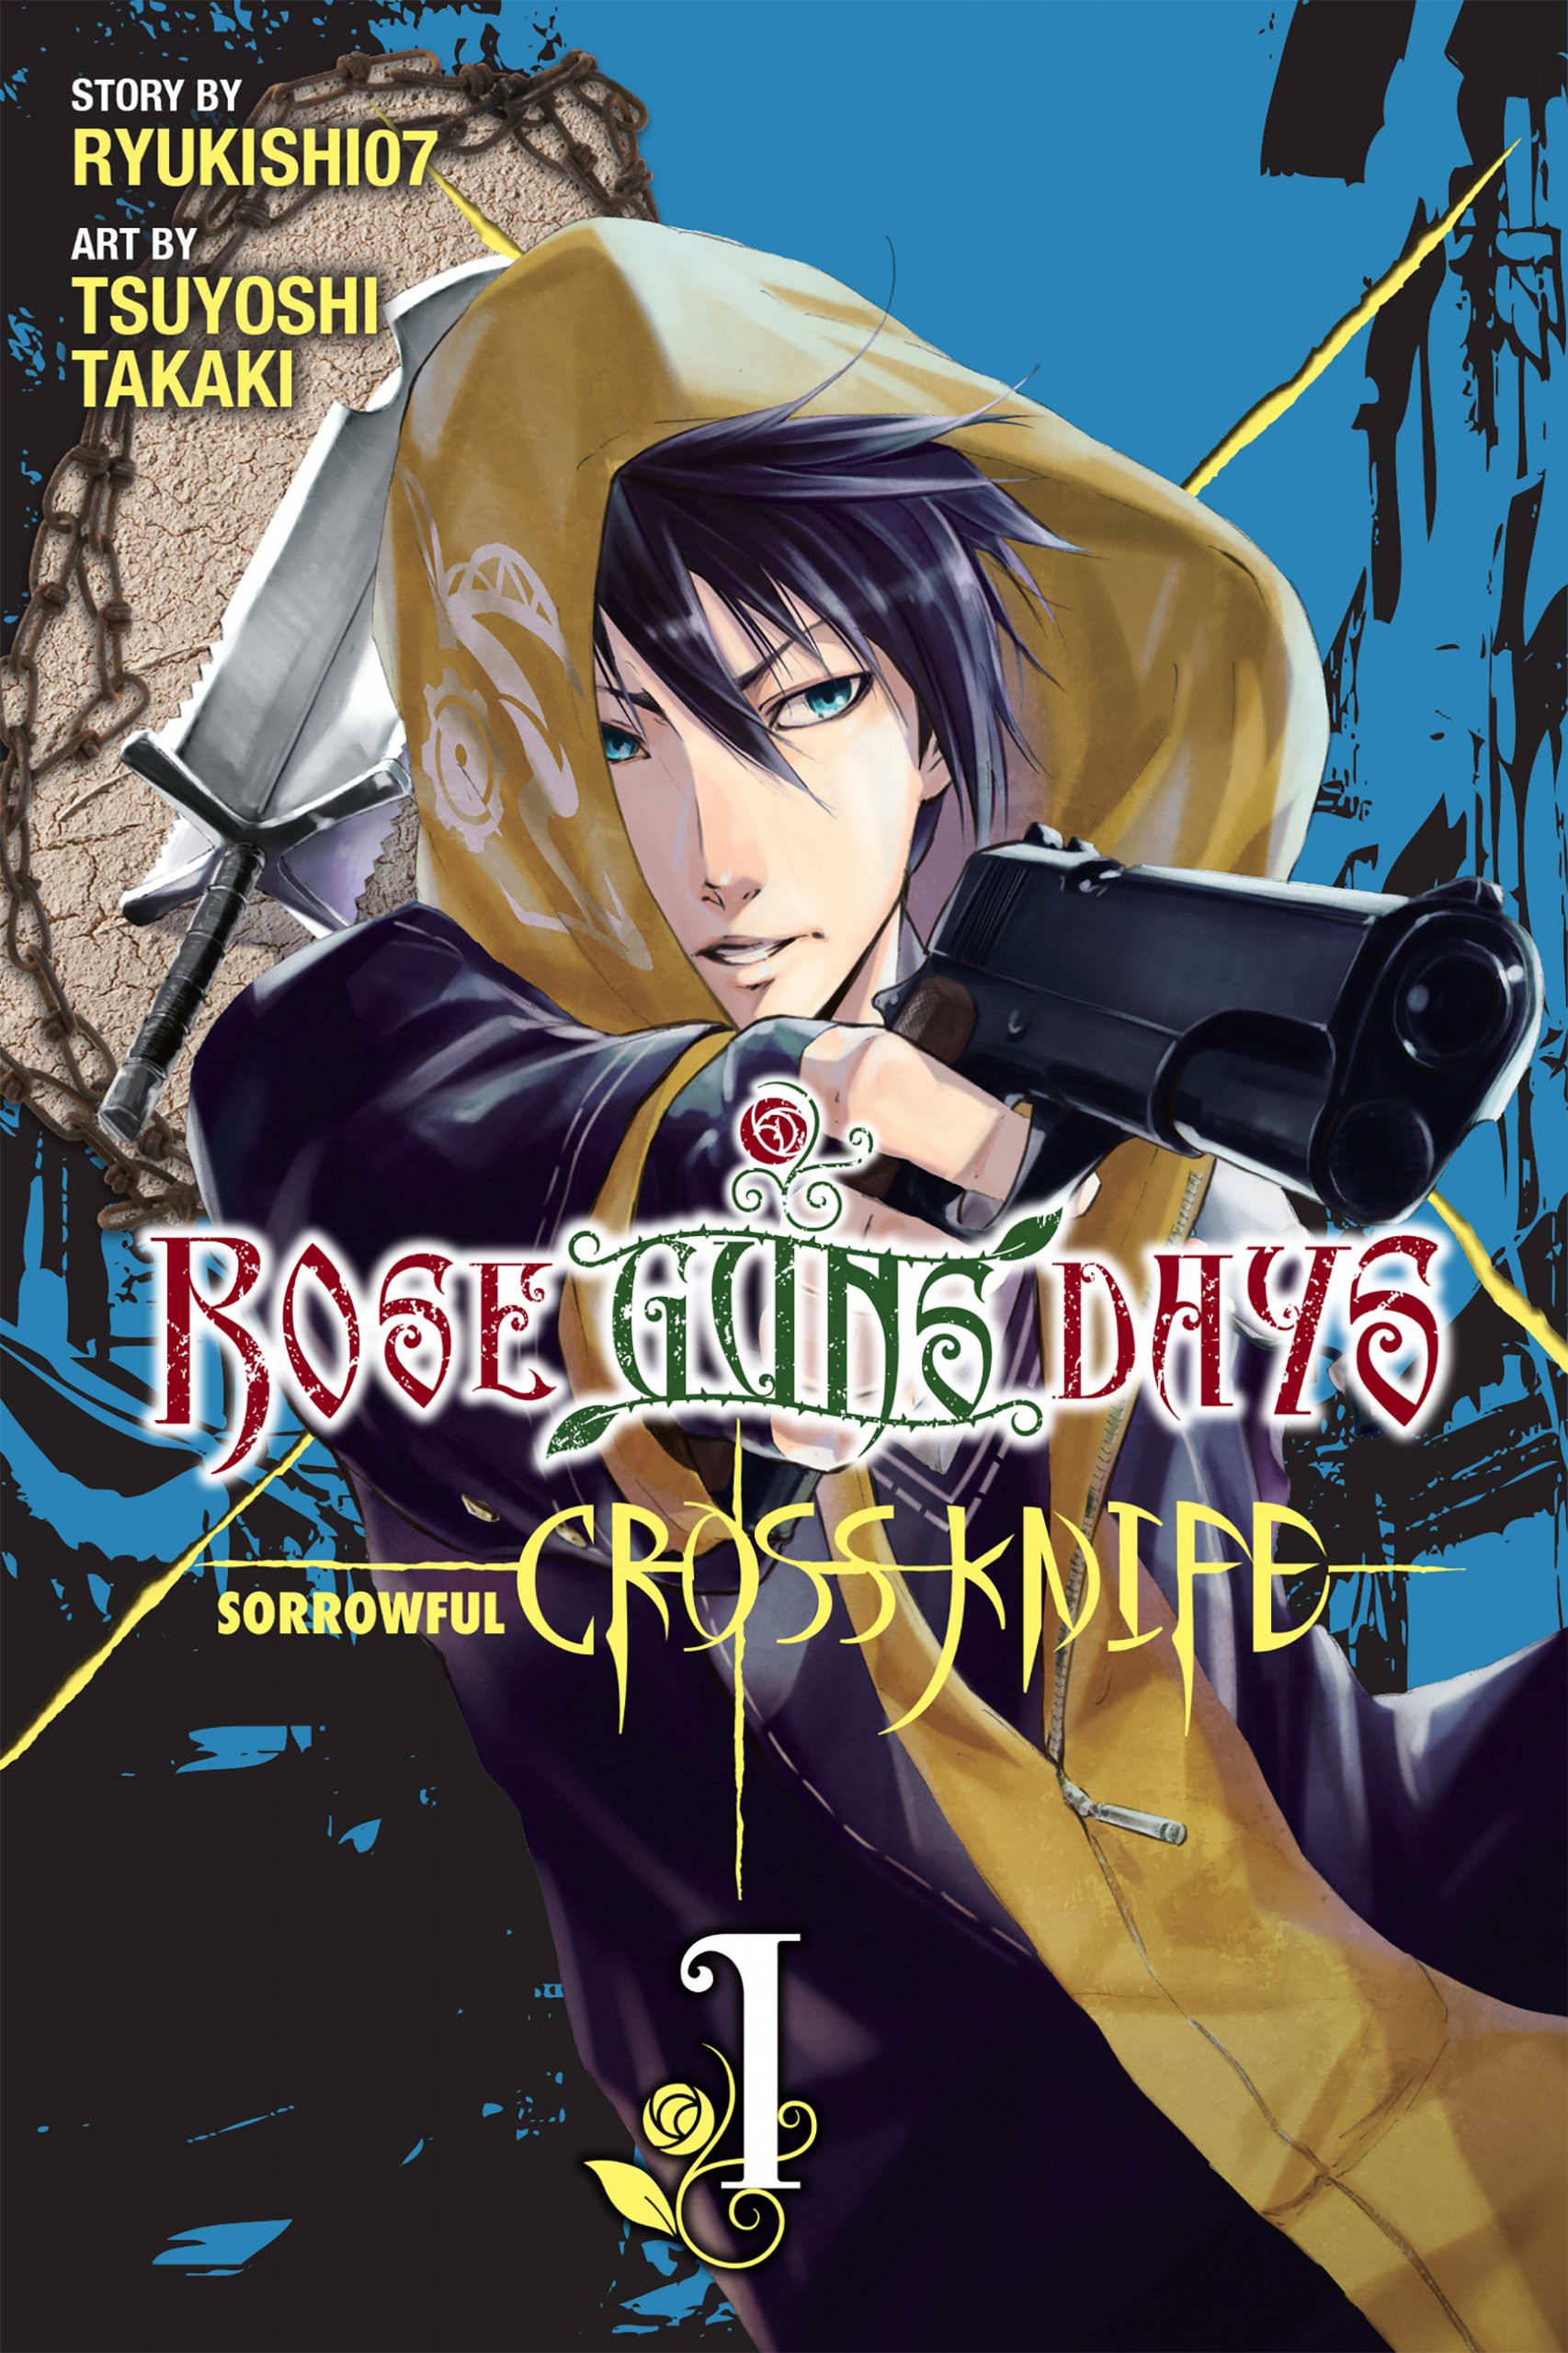 Rose-Guns-Days-Sorrowful-Cross-Knife-scale-Yên Press để phát hành phần tiền truyện của Rose Guns Days của tác giả Higurashi